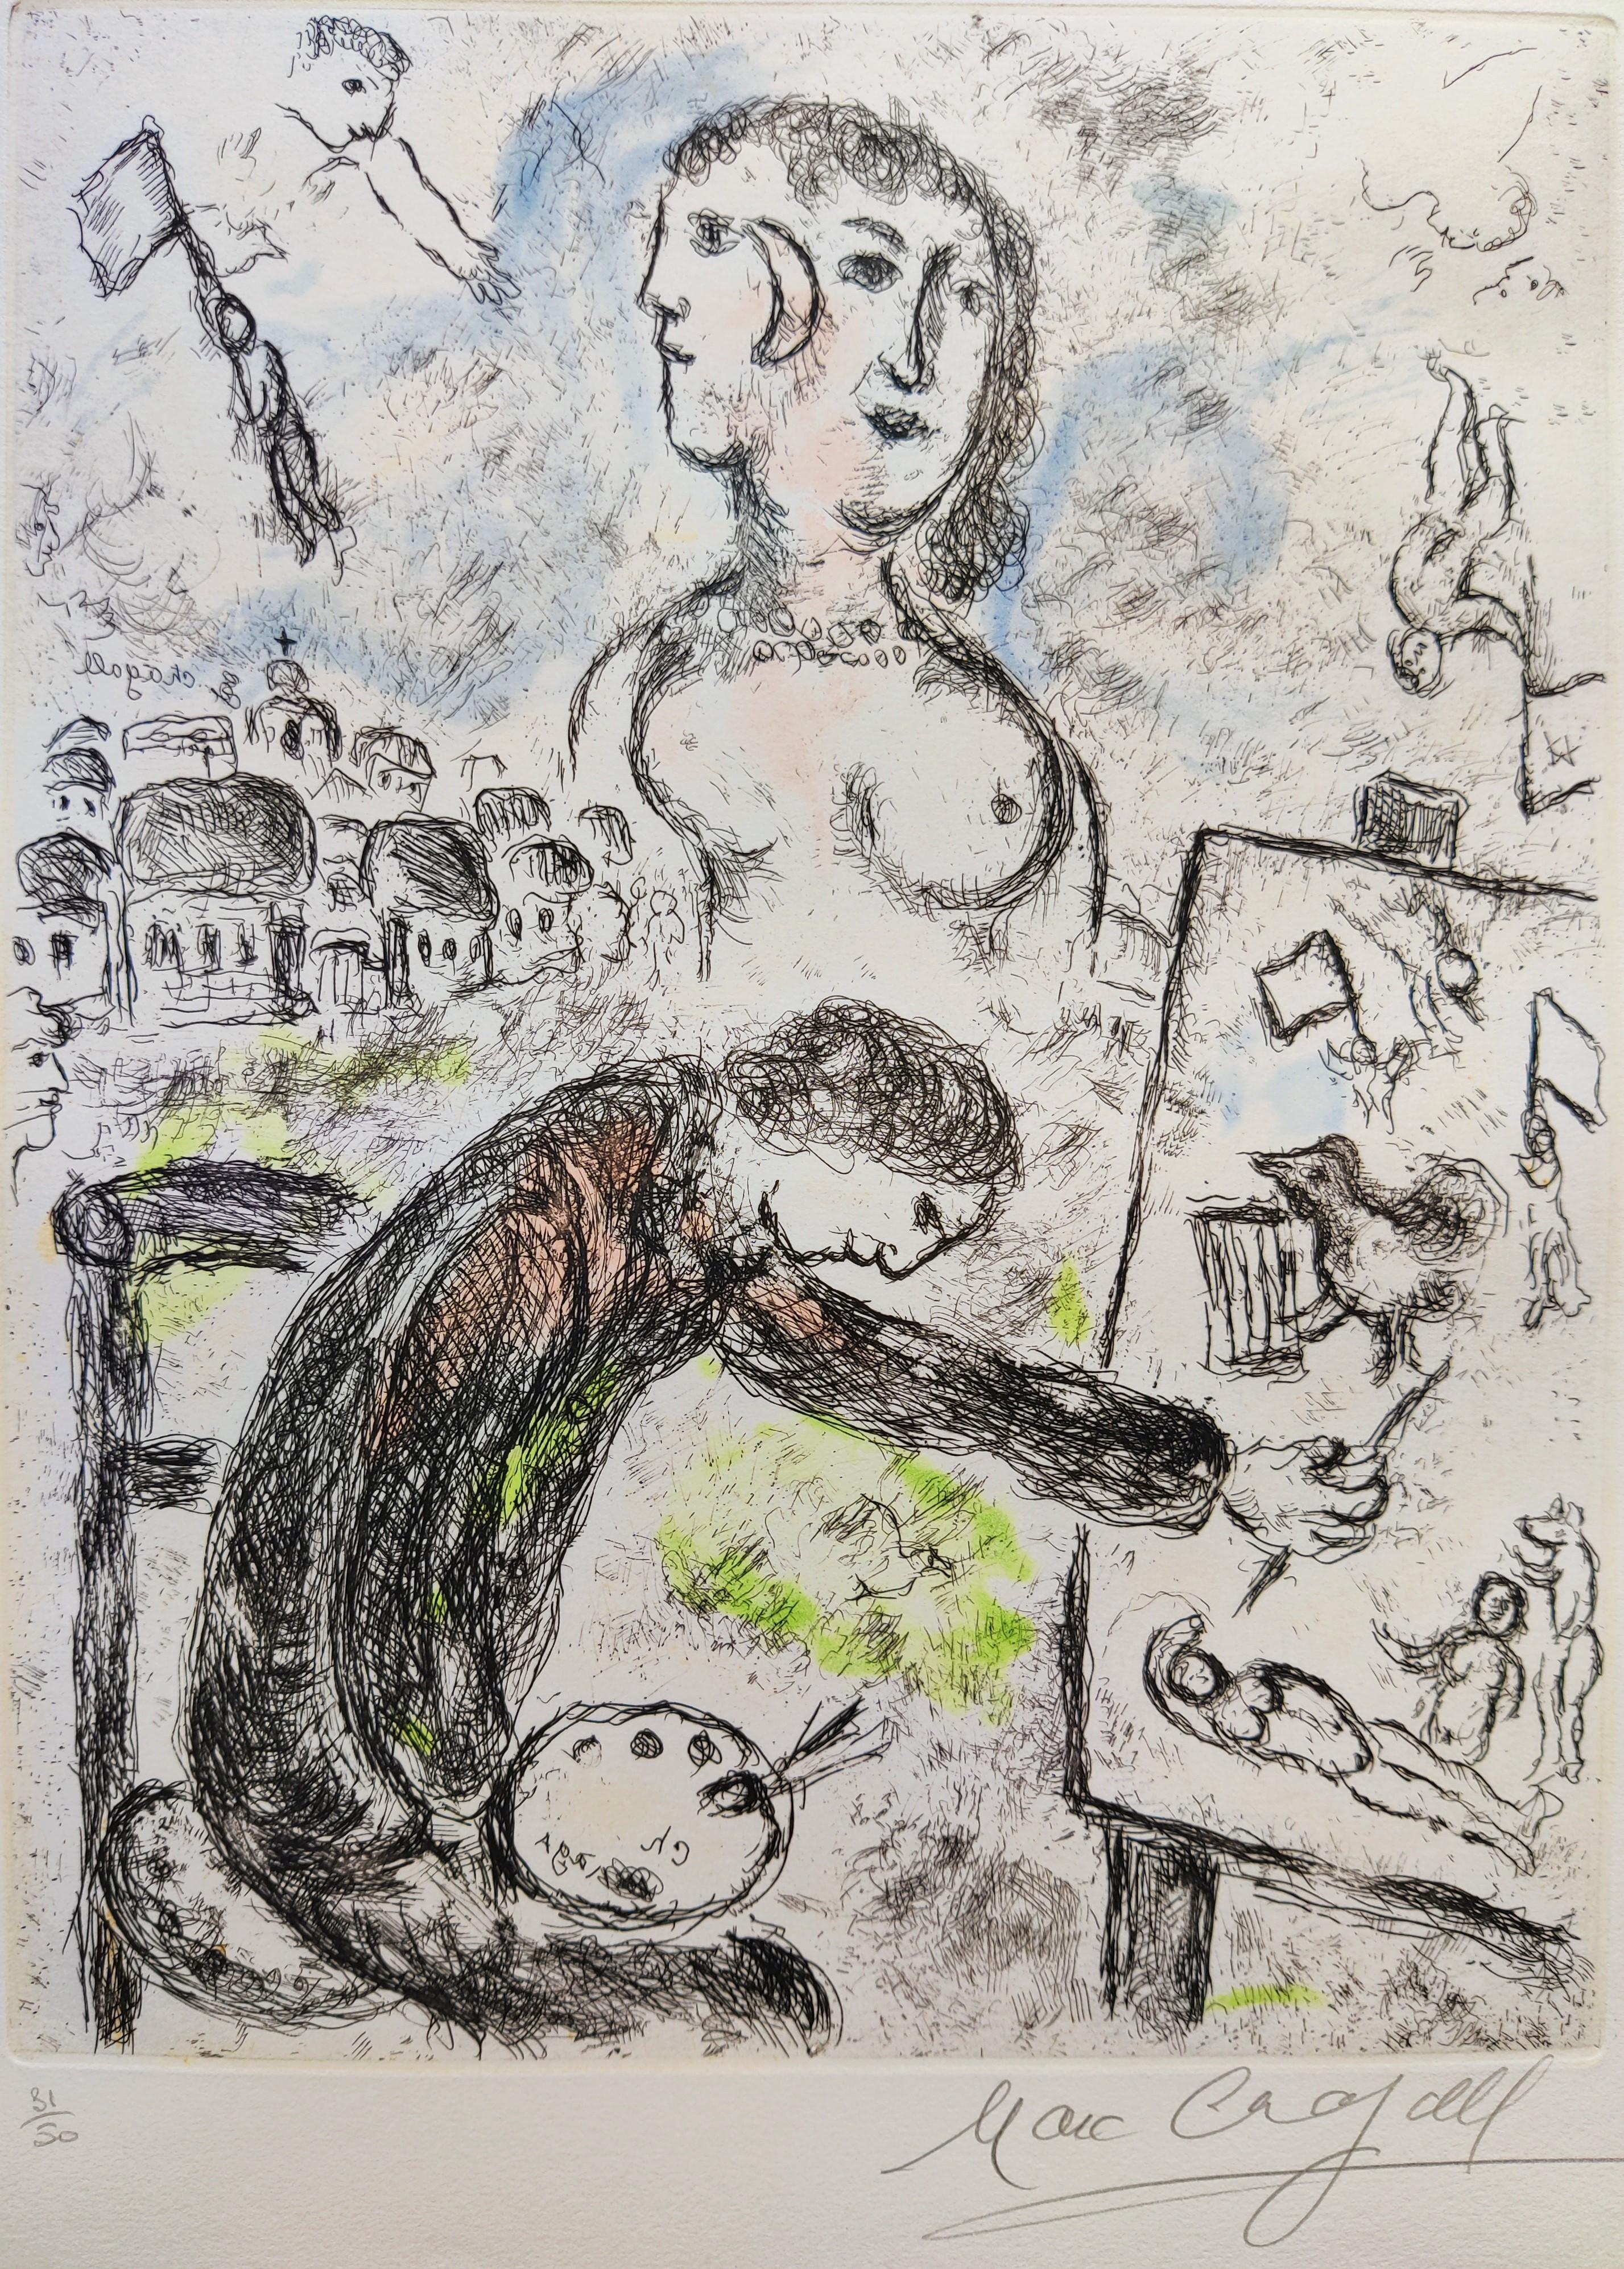 Marc Chagall
Le Peintre, de Songes (cf. C. I.C. livres 112)
gravure avec aquatinte en couleurs, 1981, 
Signé en bas à droite
Édition  31/50
Publié par G. Cramer, Genève, avec de grandes marges
Image  30 x 23,5 cm
Feuille  52 x 37,5 cm.
Non encadré